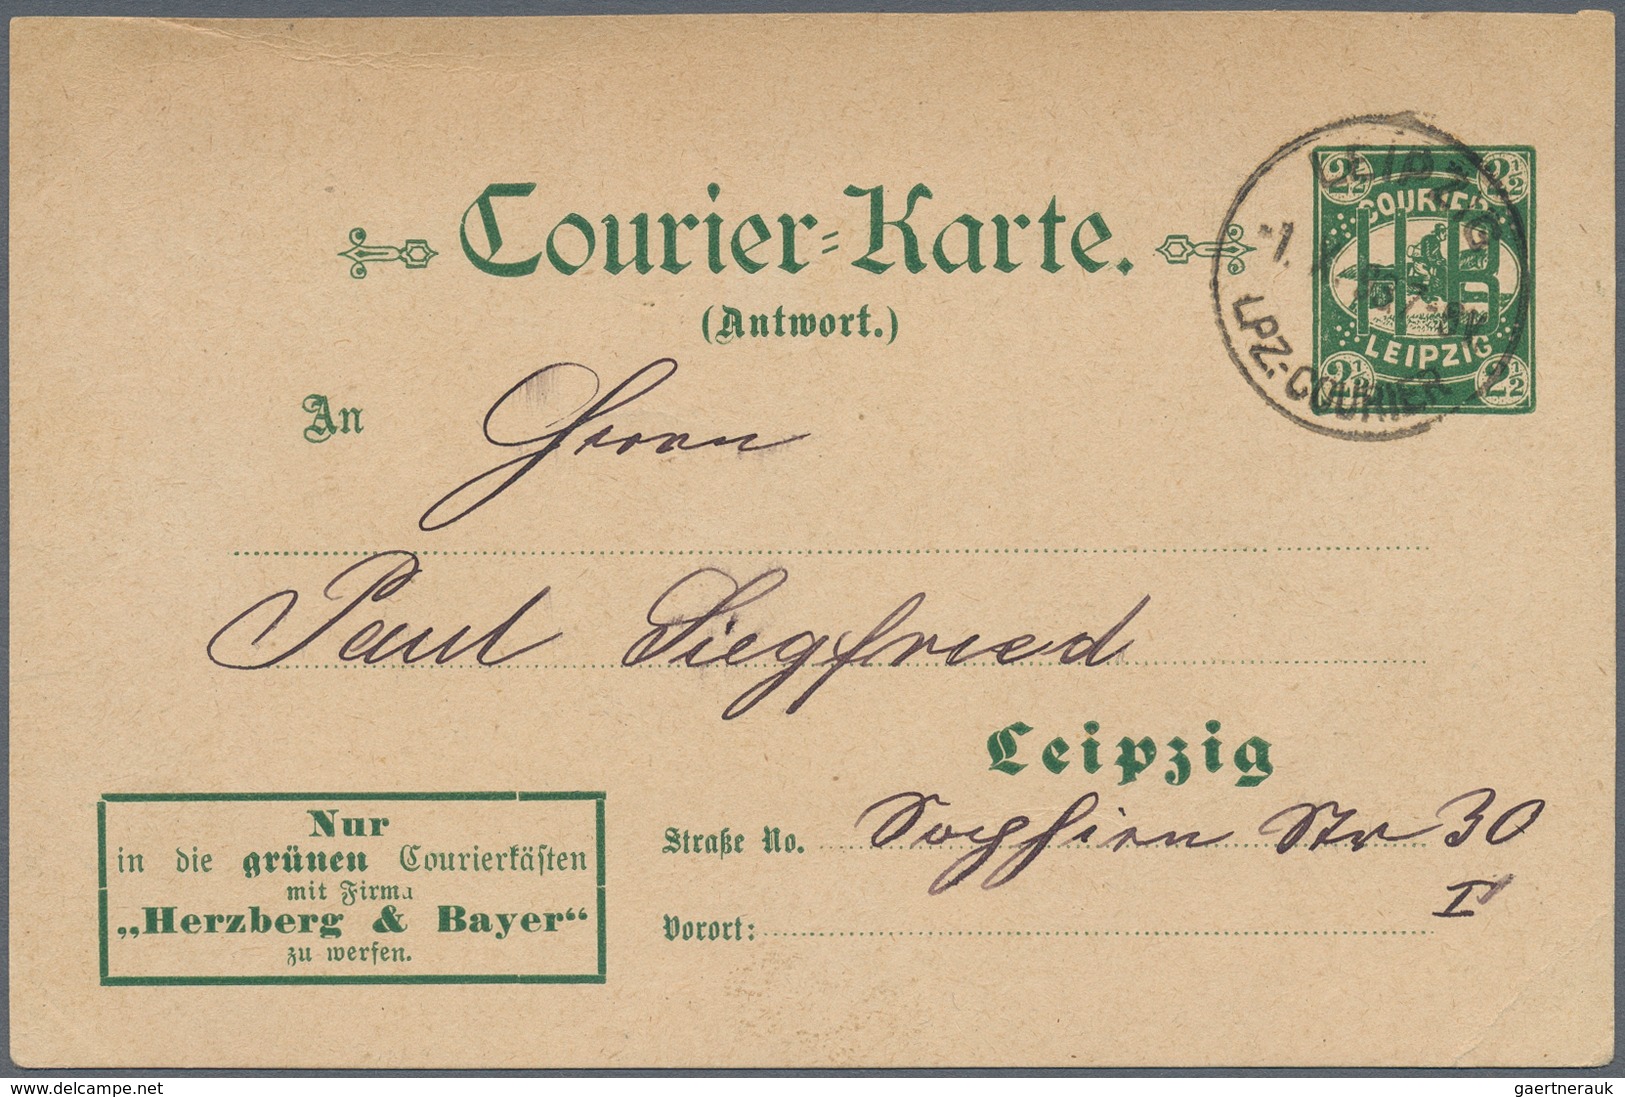 Deutsches Reich - Privatpost (Stadtpost): LEIPZIG: Courier H. B., Courier-Karte 21/2 Pfg. Braun, 1.8 - Posta Privata & Locale